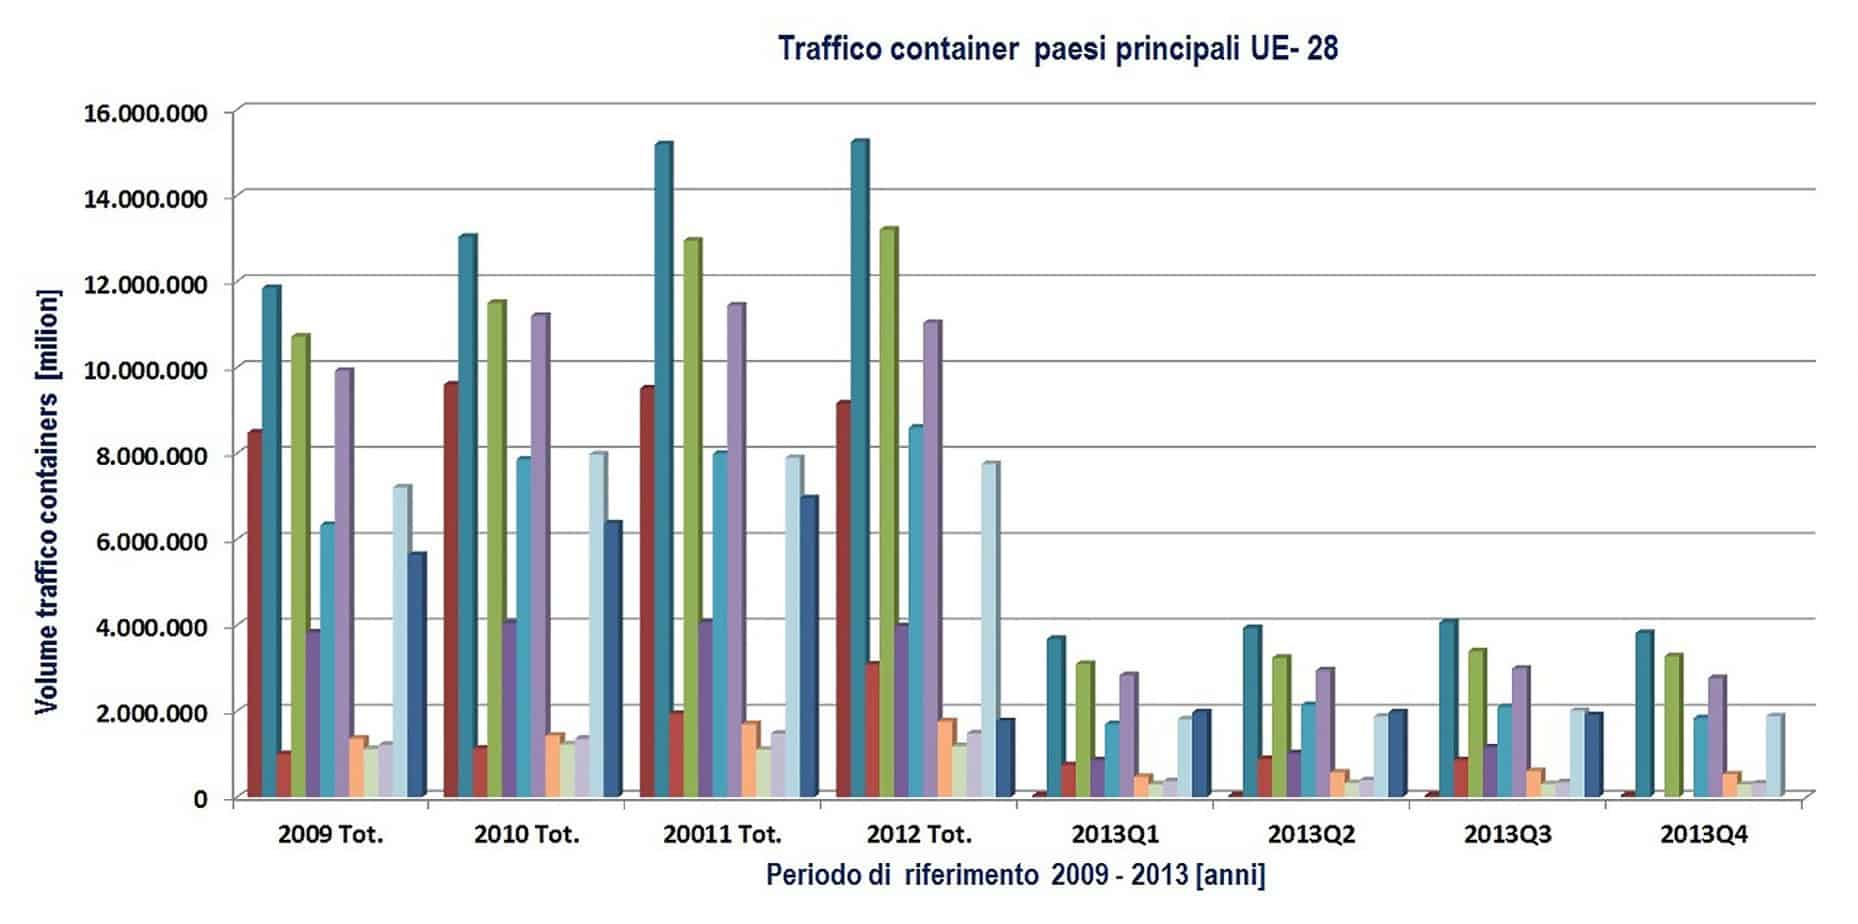 Il traffico container nei principali porti-core UE